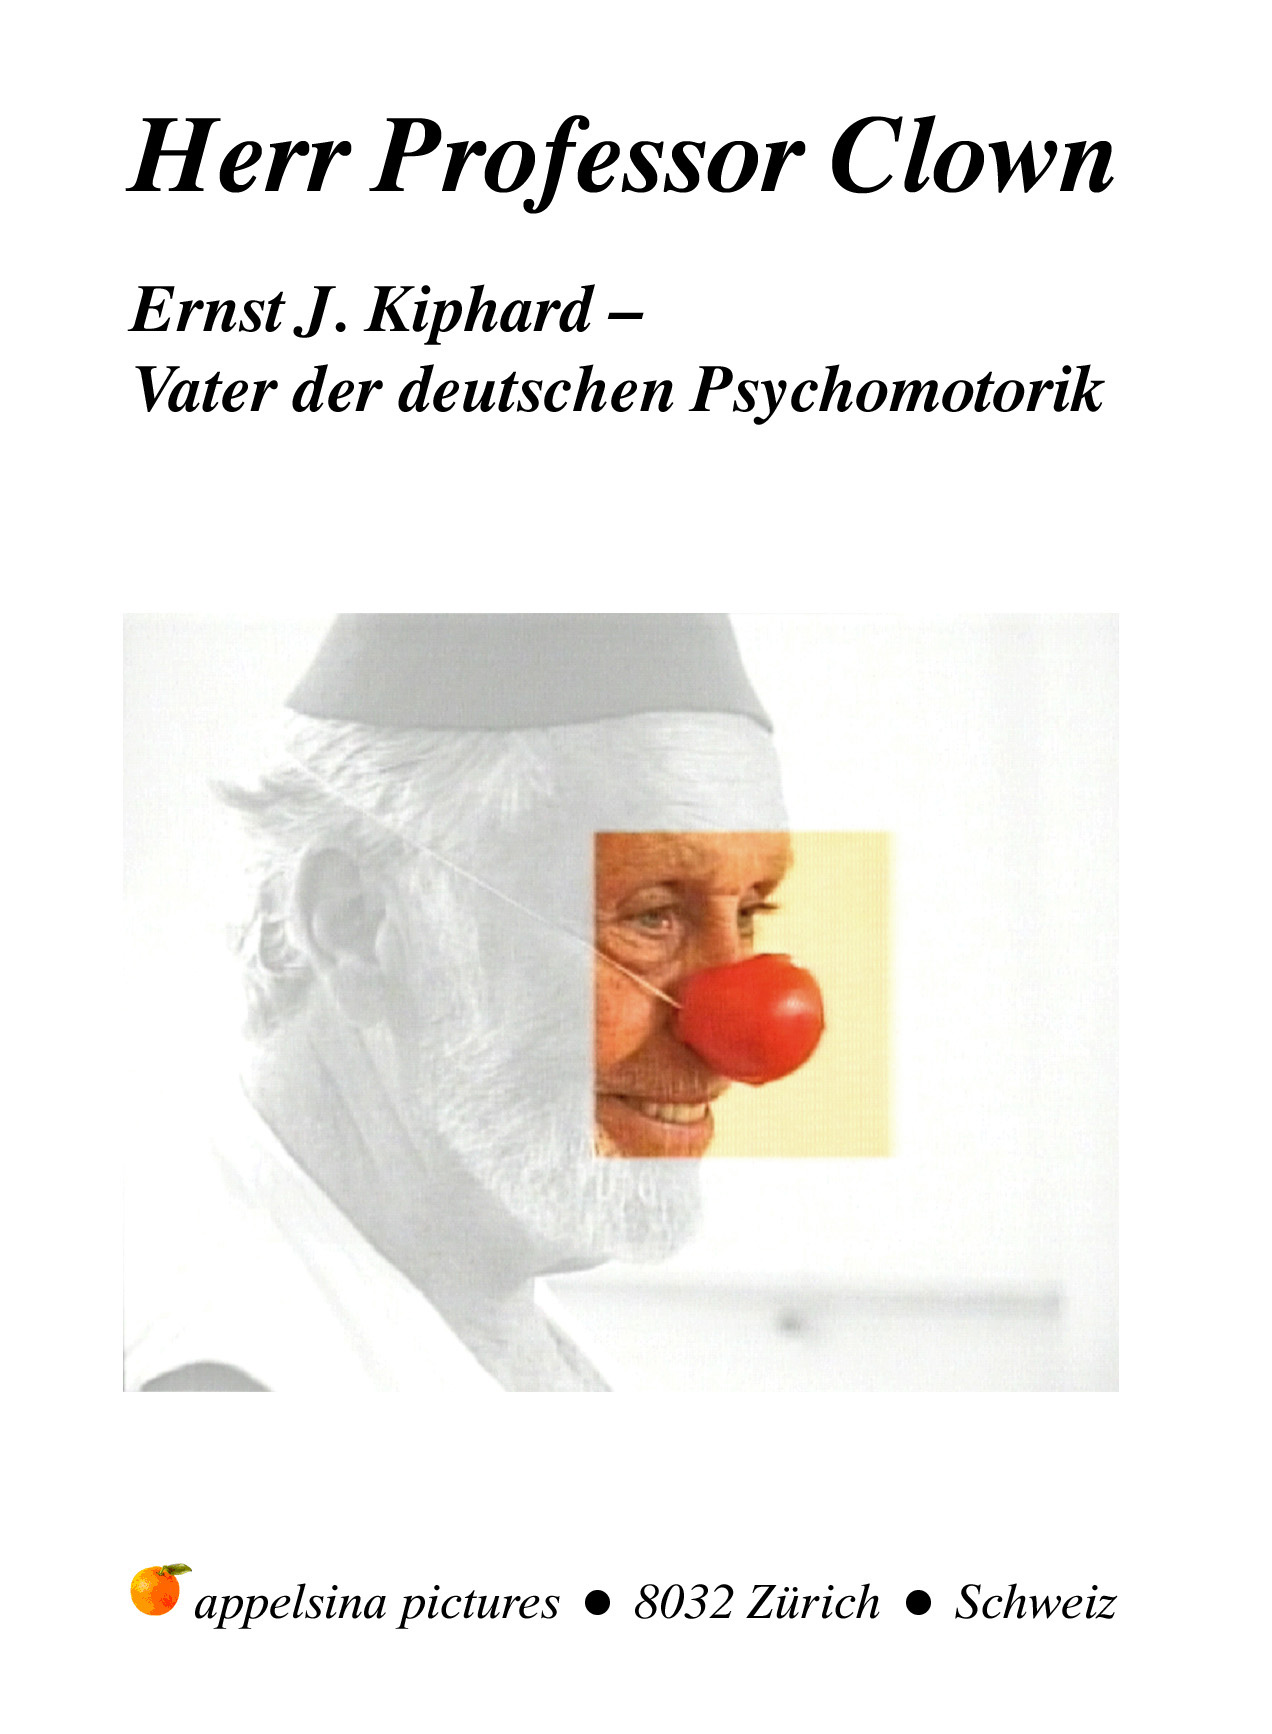 Schulanfang für Ernst Kiphard